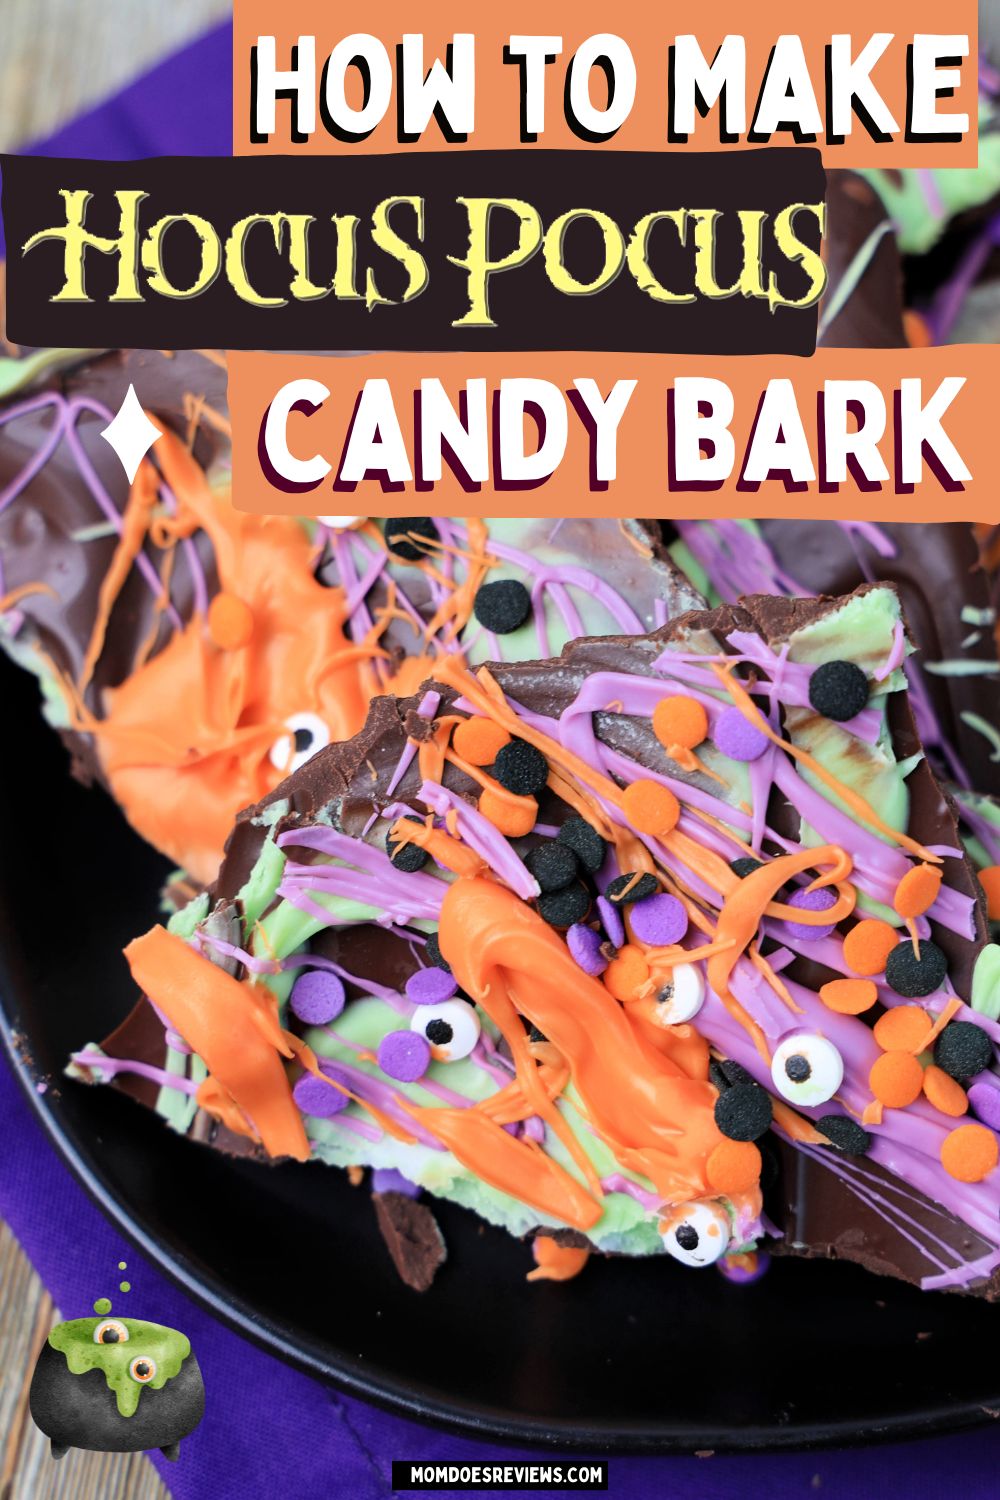 How to Make Hocus Pocus Candy Bark